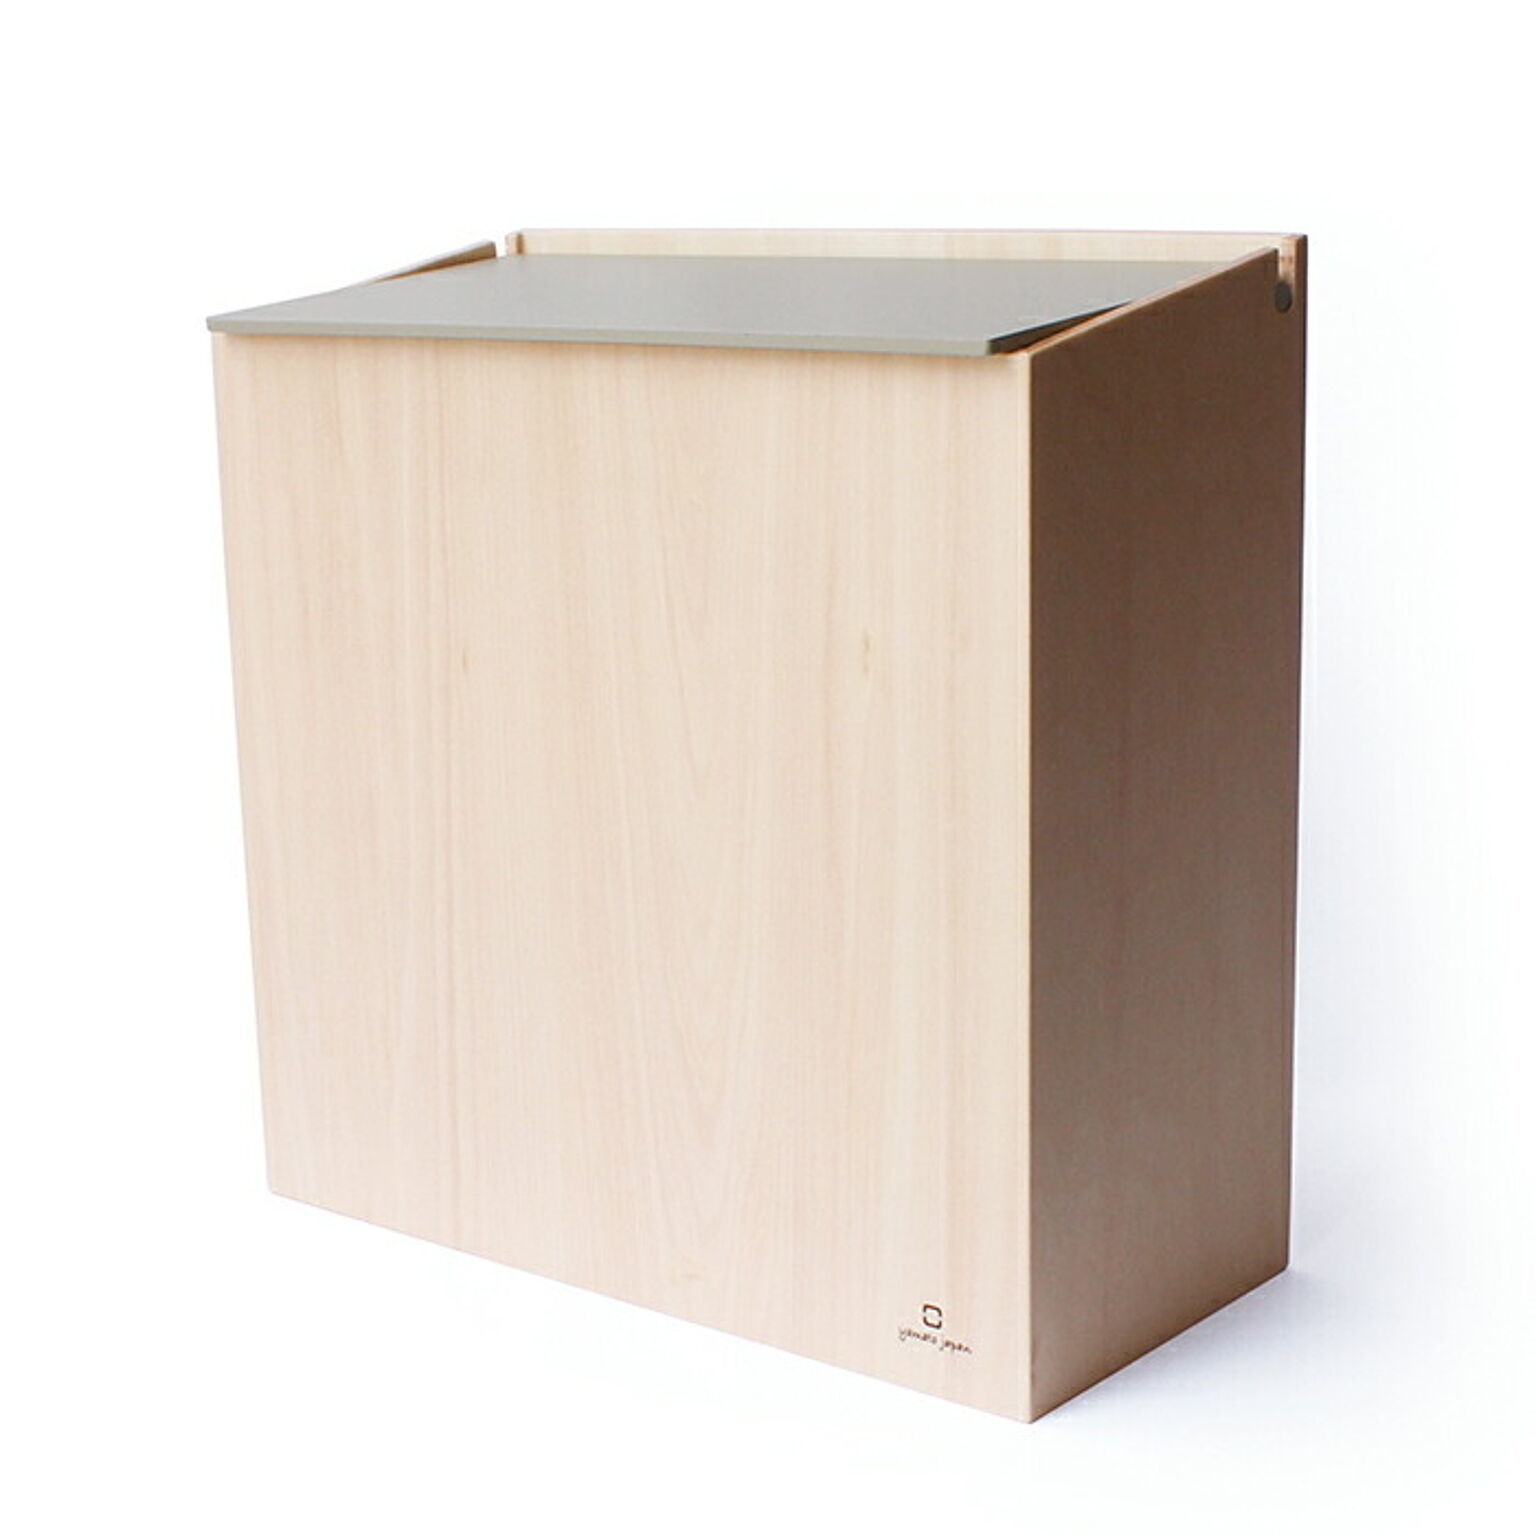 ゴミ箱 おしゃれ ダストボックス 北欧 シンプル かわいい スリム ごみ箱 日本製 SLIM DUST 木製 職人の手作り リビング ギフト ヤマト工芸